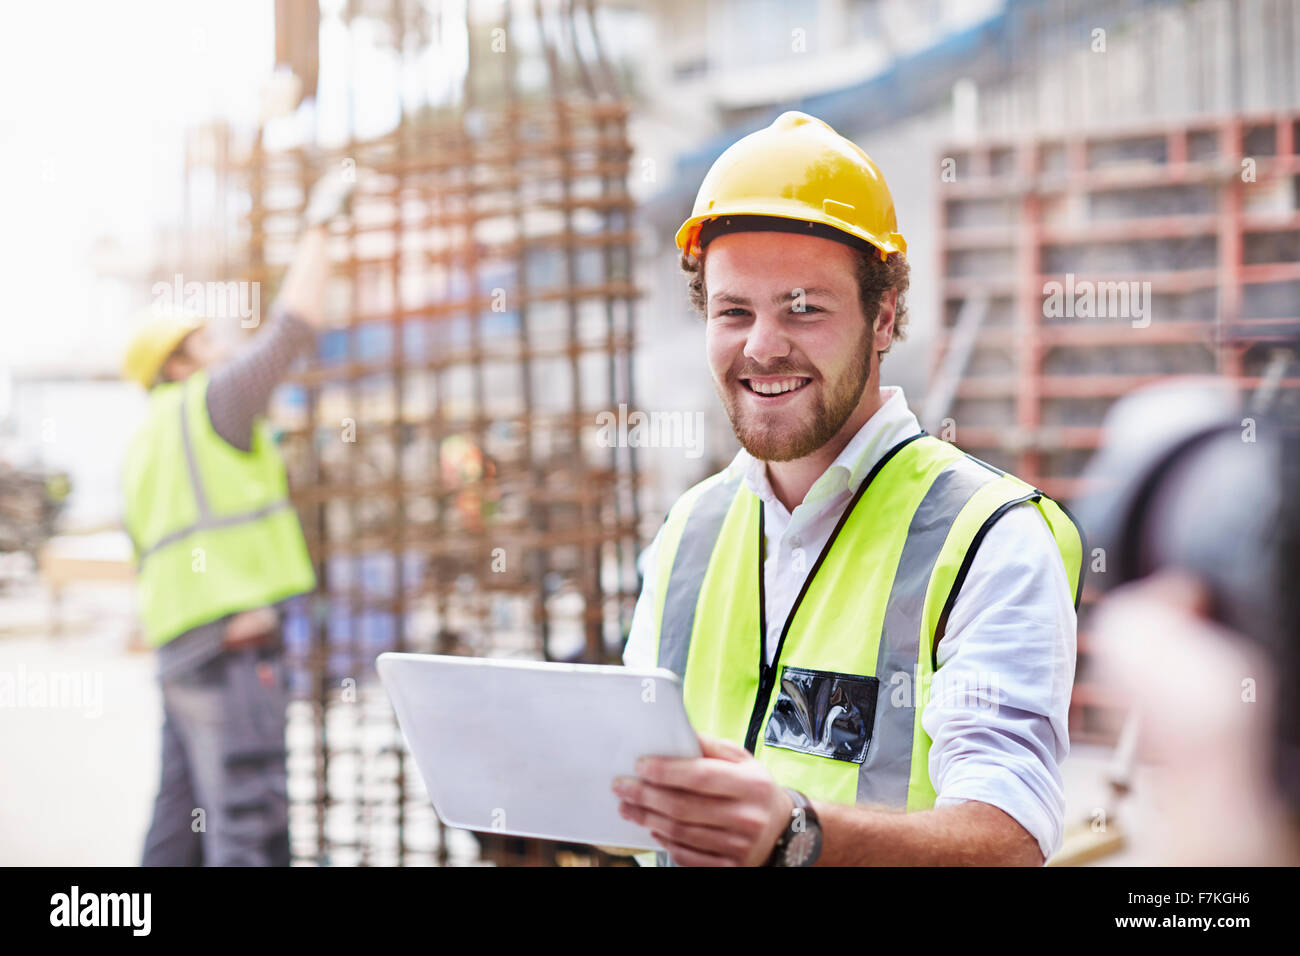 Portrait confiant construction worker with digital tablet at construction site Banque D'Images